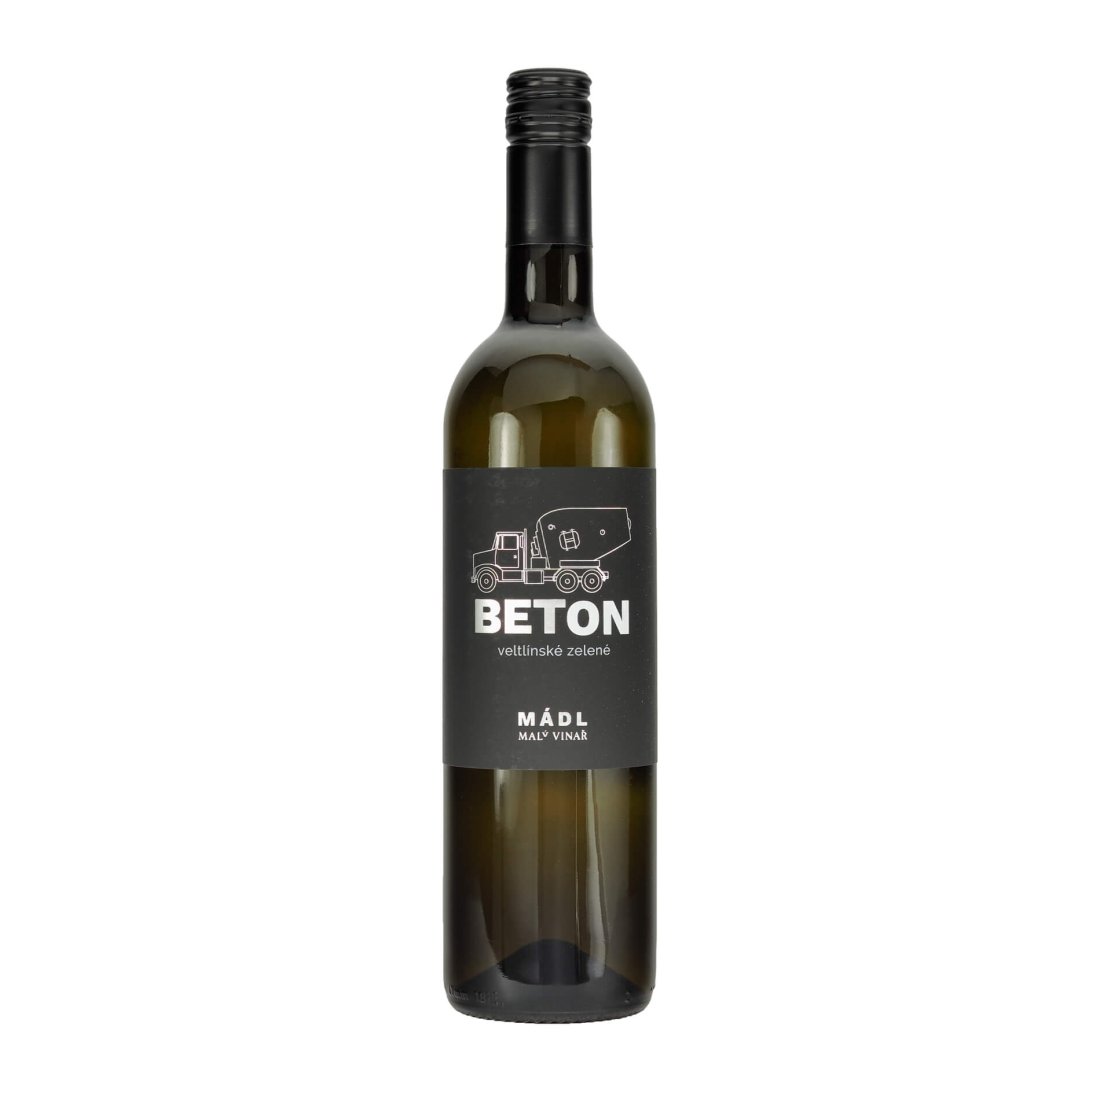 Veltlínské zelené 2021 BETON moravské zemské víno MÁDL suché š. 2181